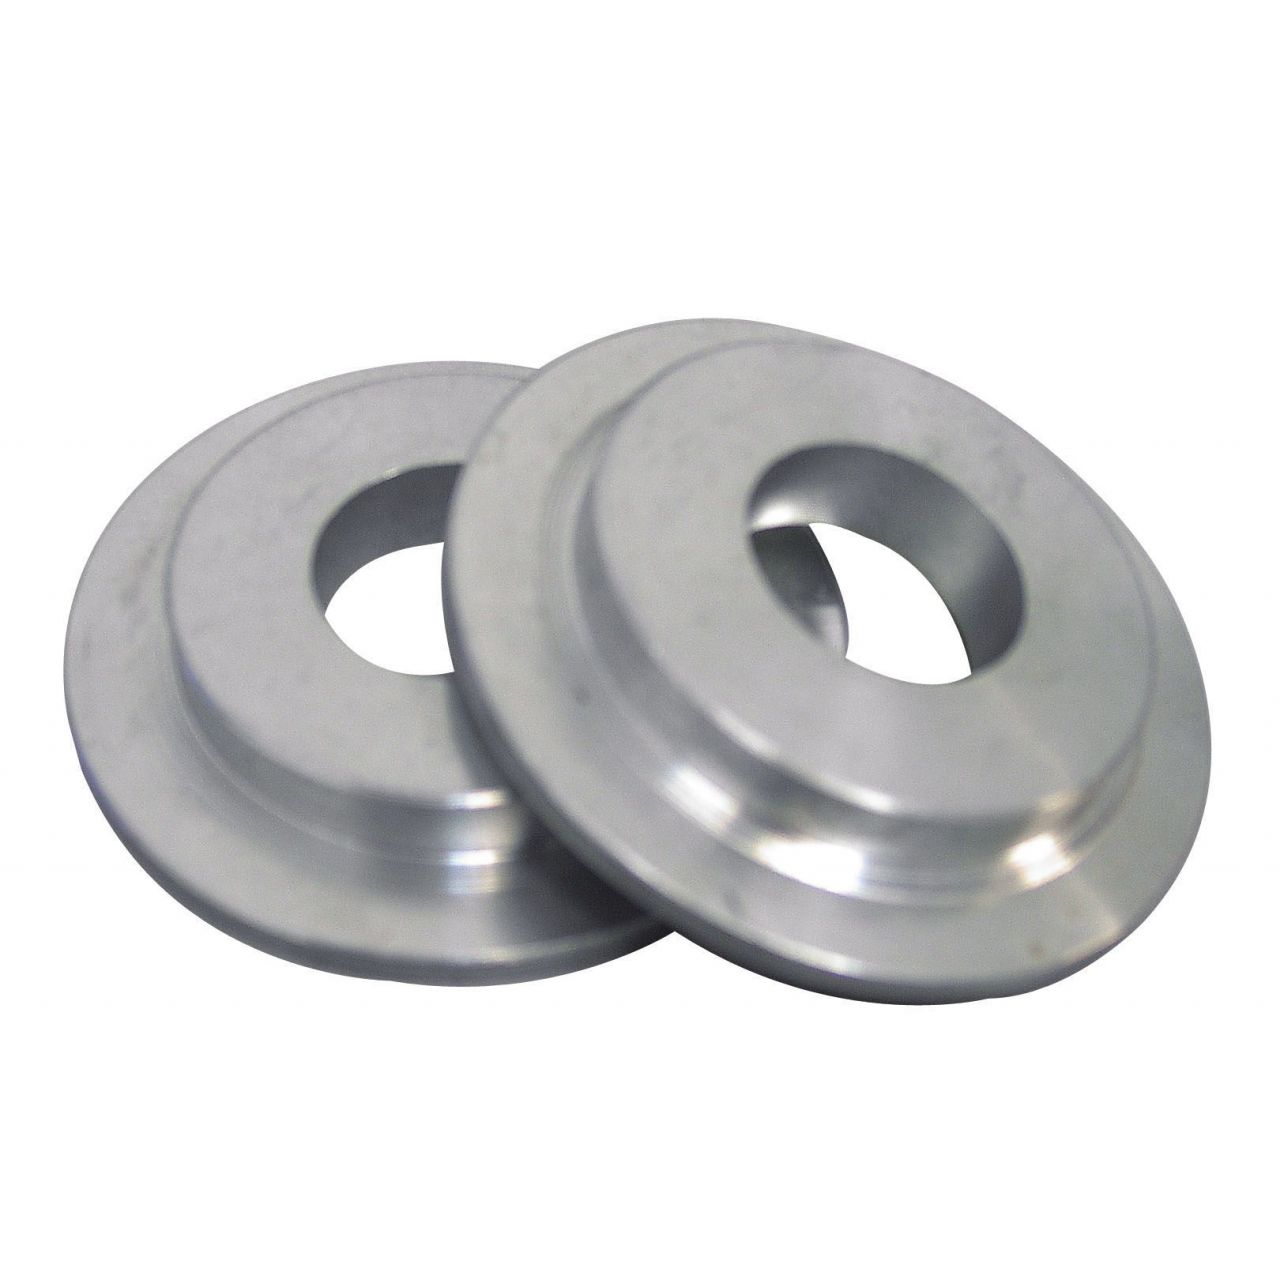 Bridas reductoras (Medidas 54-20 mm; Material Aluminio)